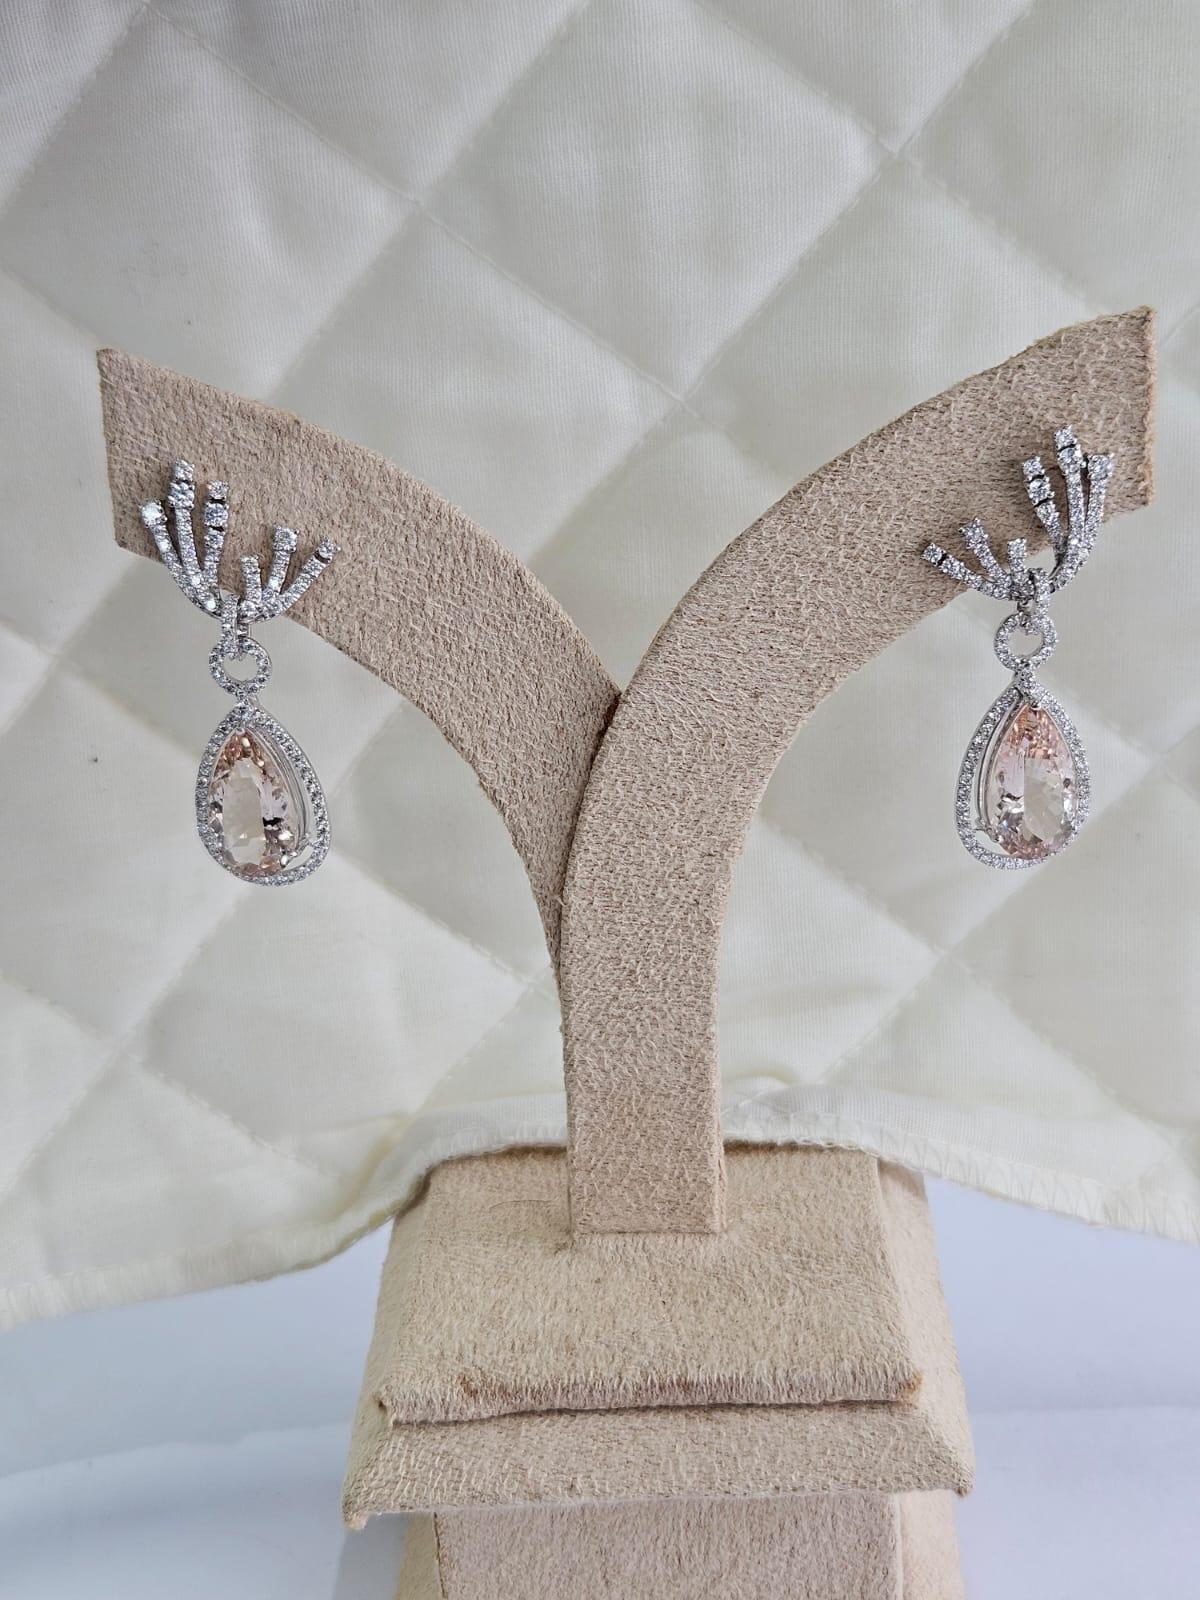 Des boucles d'oreilles pendantes en or blanc 18 carats et diamants en Morganite, de style moderne, très belles et spéciales. Le poids des Morganites en forme de poire est de 7.40 carats. Le poids des diamants est de 1,64 carats. Le poids net en or